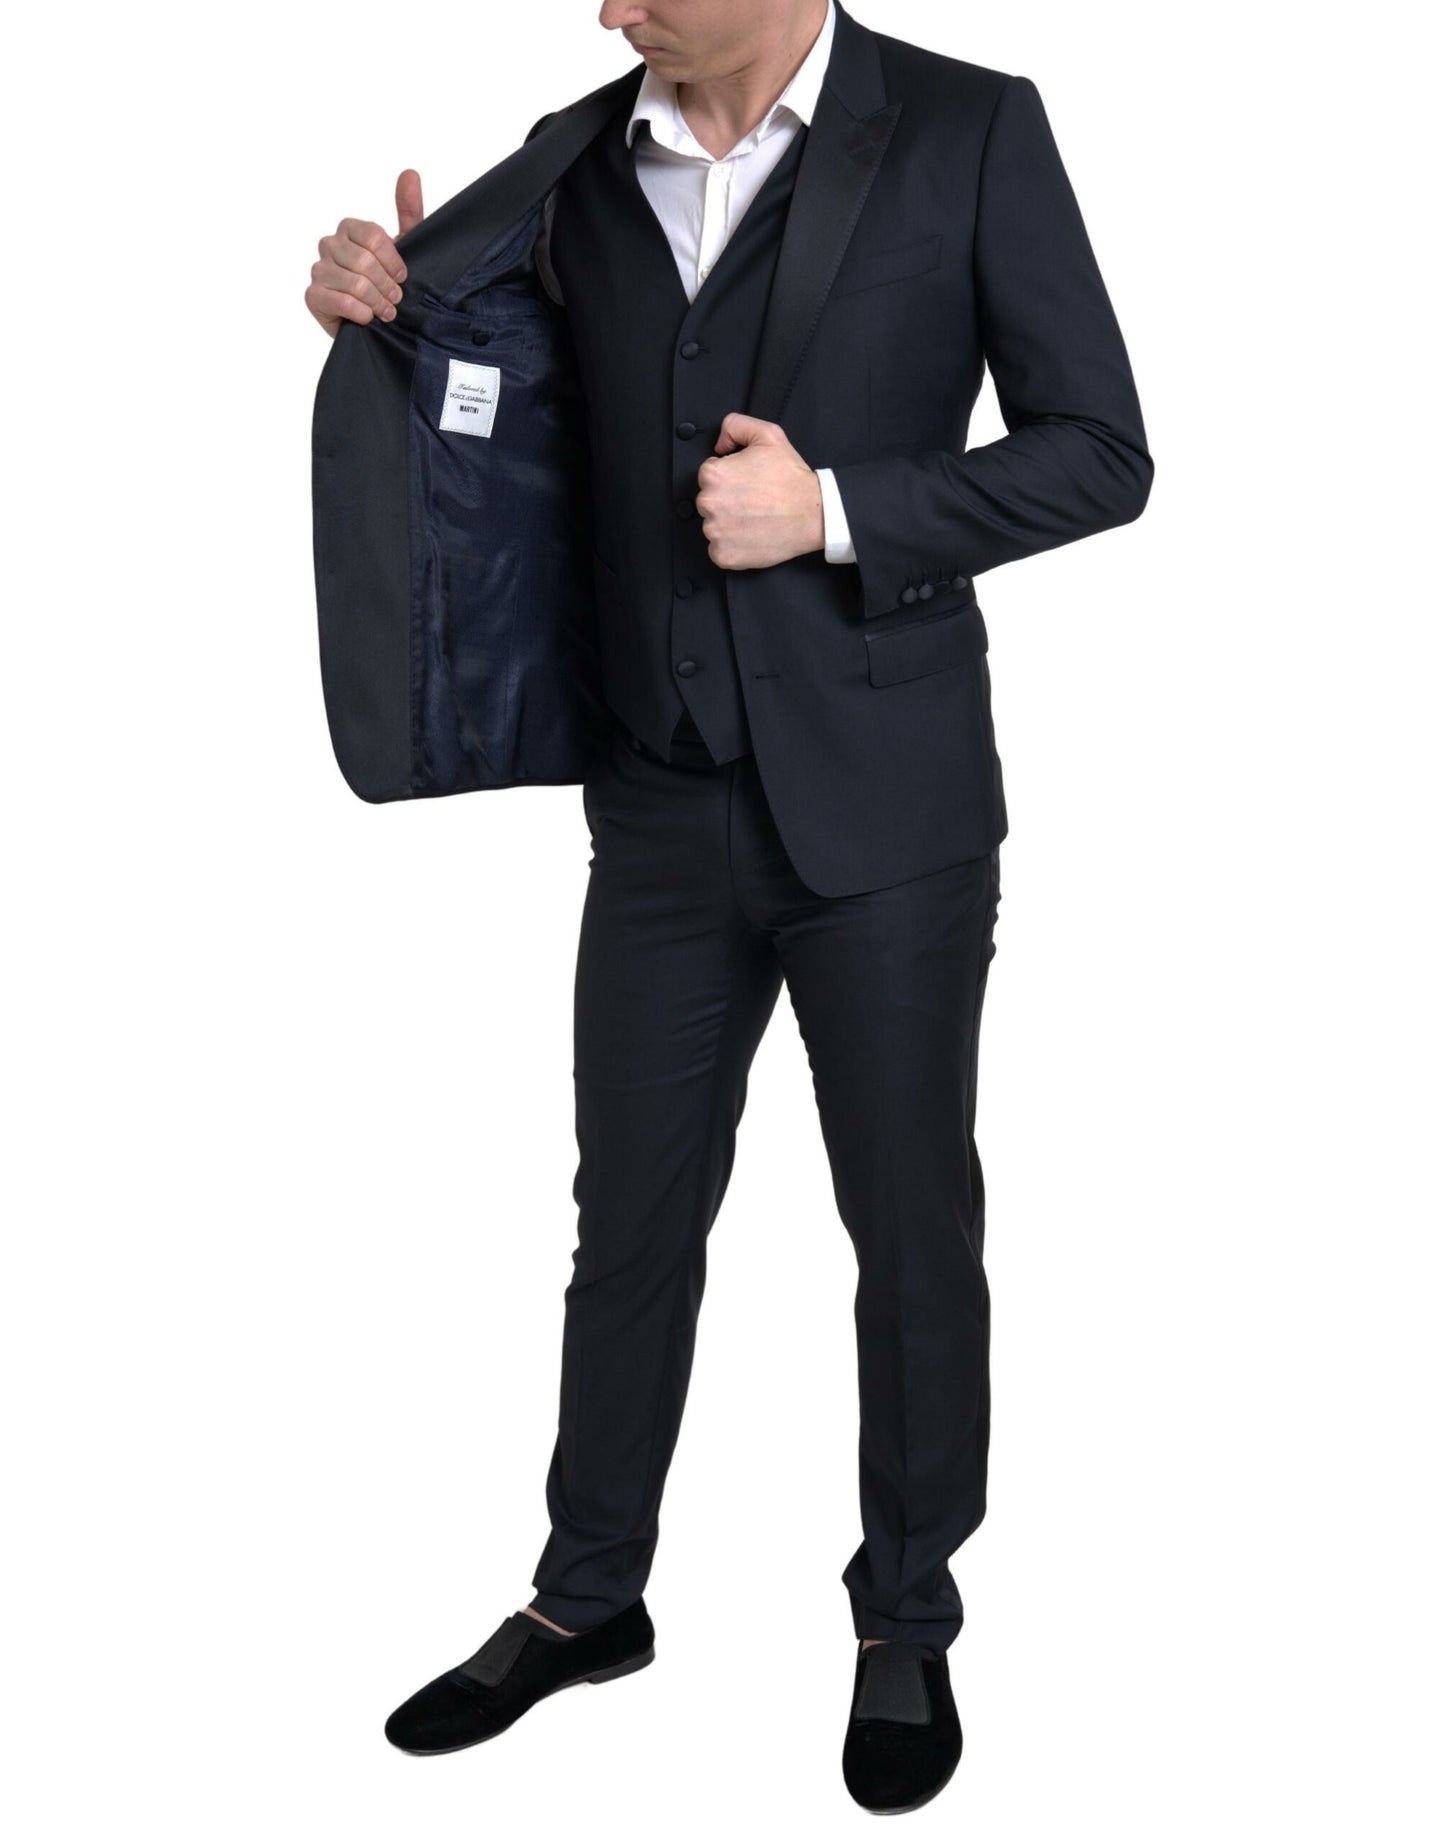 Elegant Slim Fit Black Three-Piece Suit